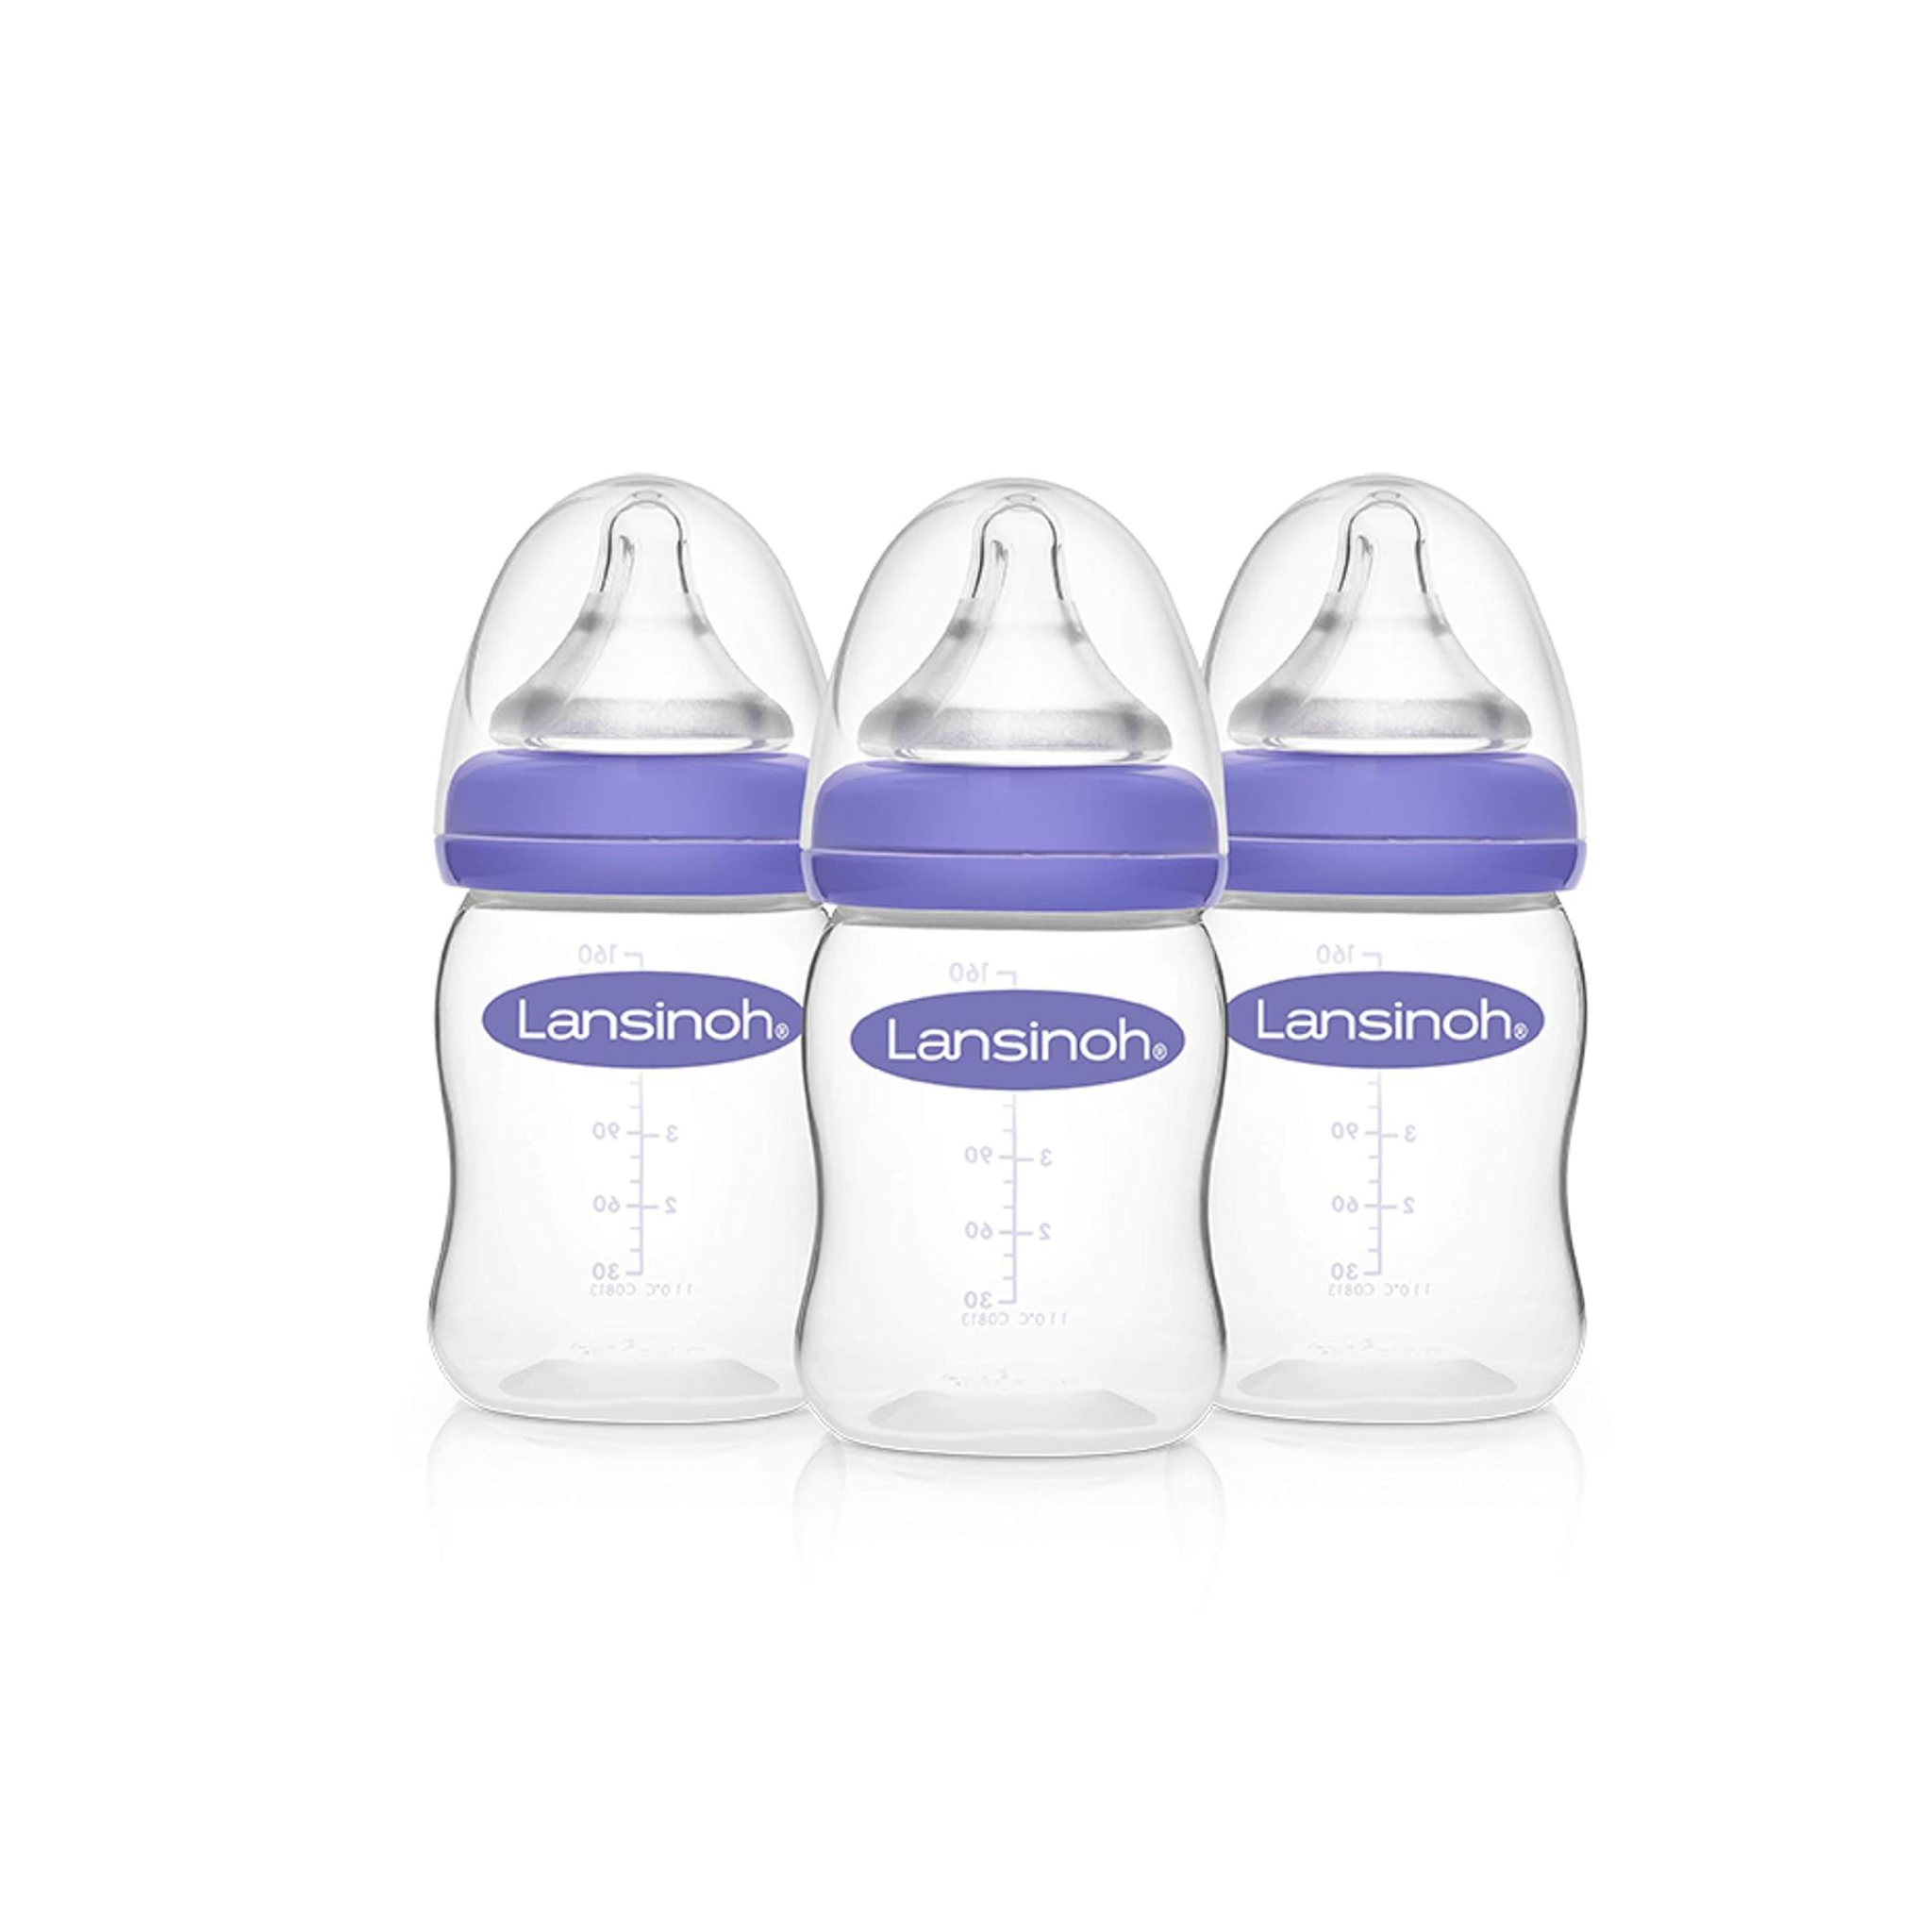 3-Count Lansinoh Breastfeeding Bottles for Baby, 5oz